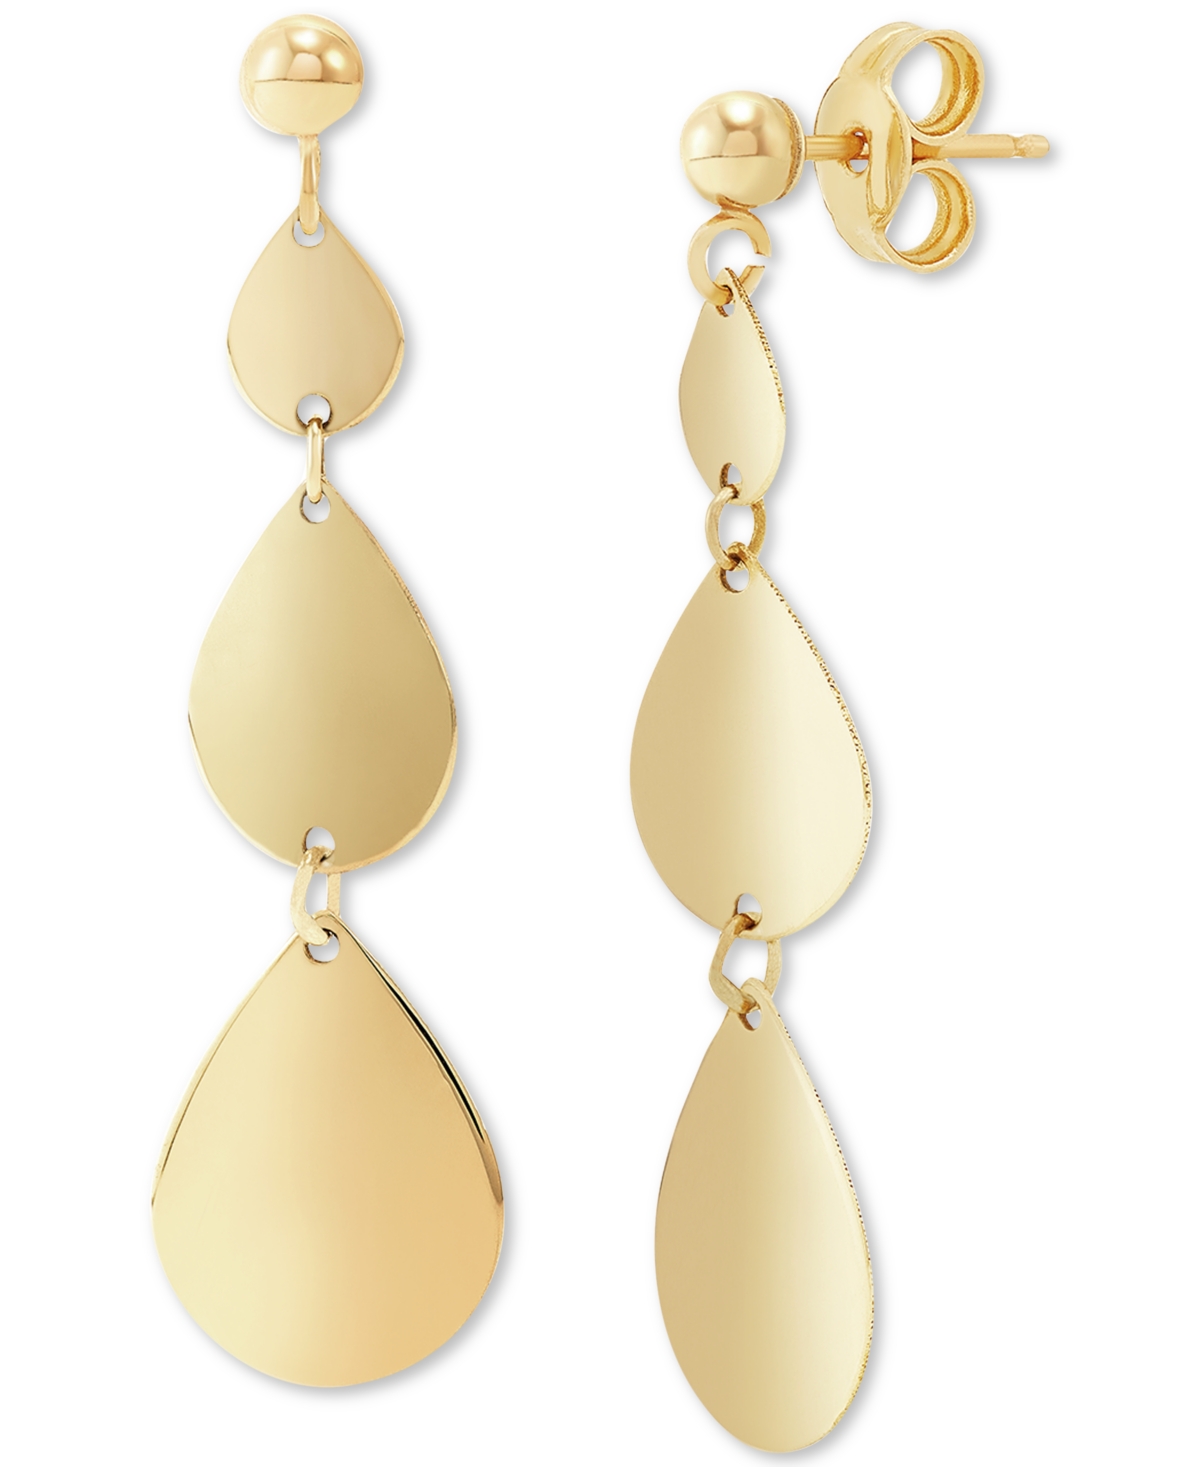 Graduated Teardrop Drop Earrings in 10k Gold - Gold